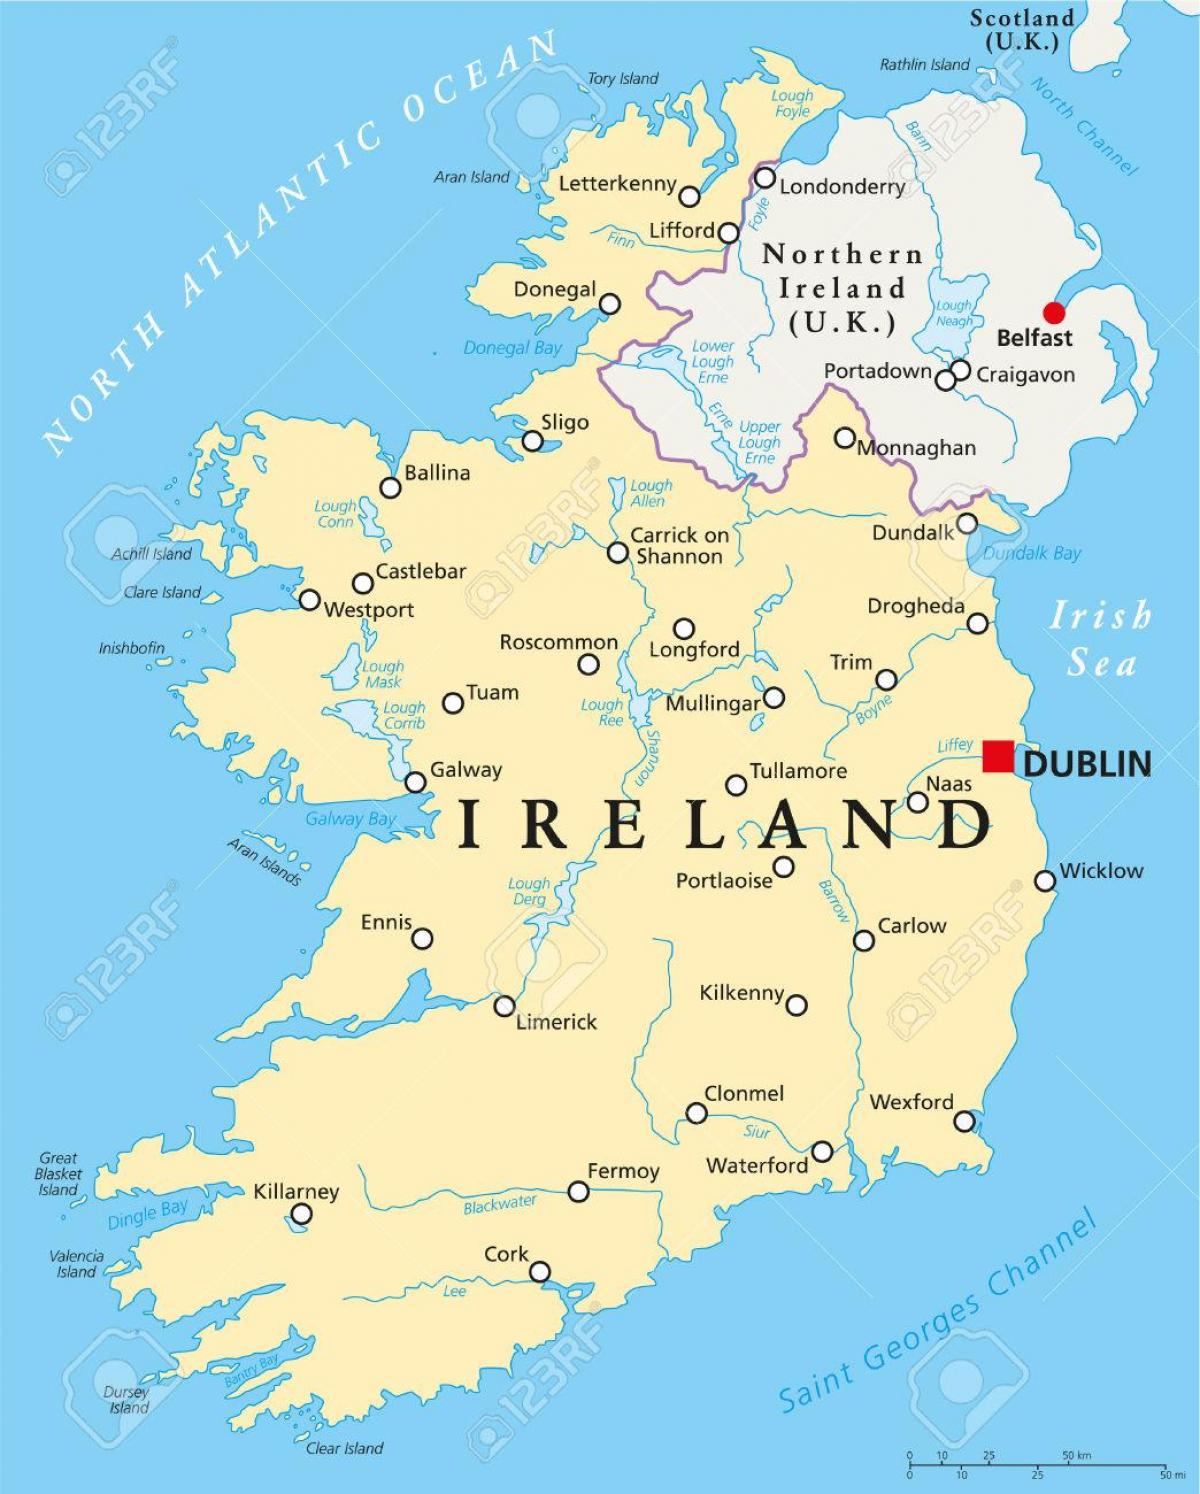 Дублін Ірландія карта